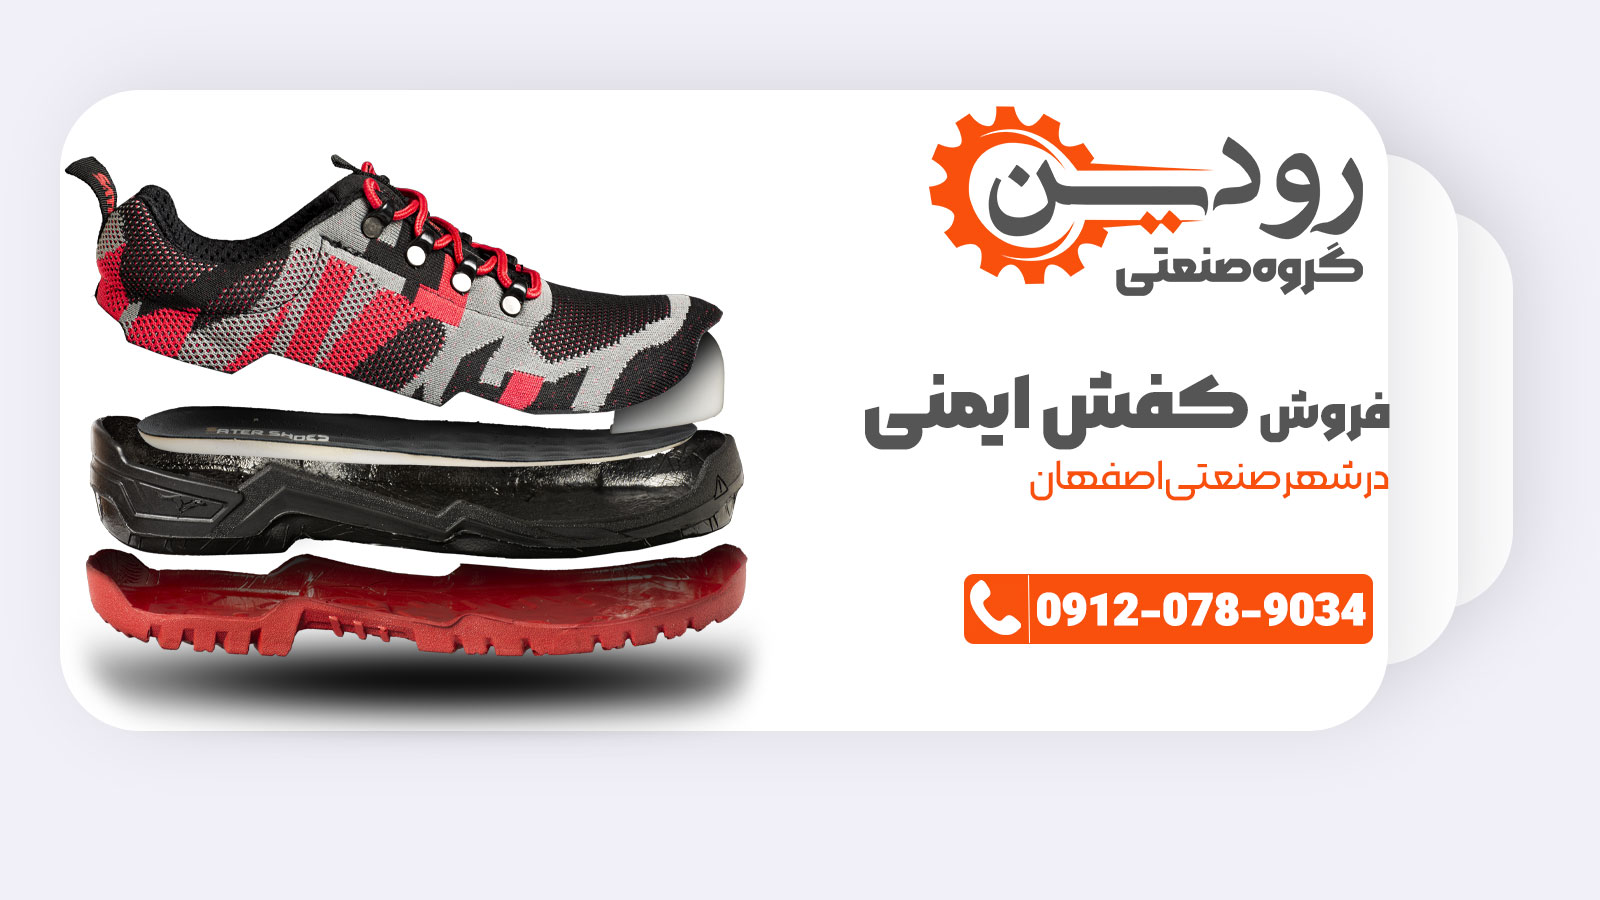 نمایندگی فروش کفش ایمنی اصفهان جزو تولید کنندگان برتر کفش ایمنی در ایران است.